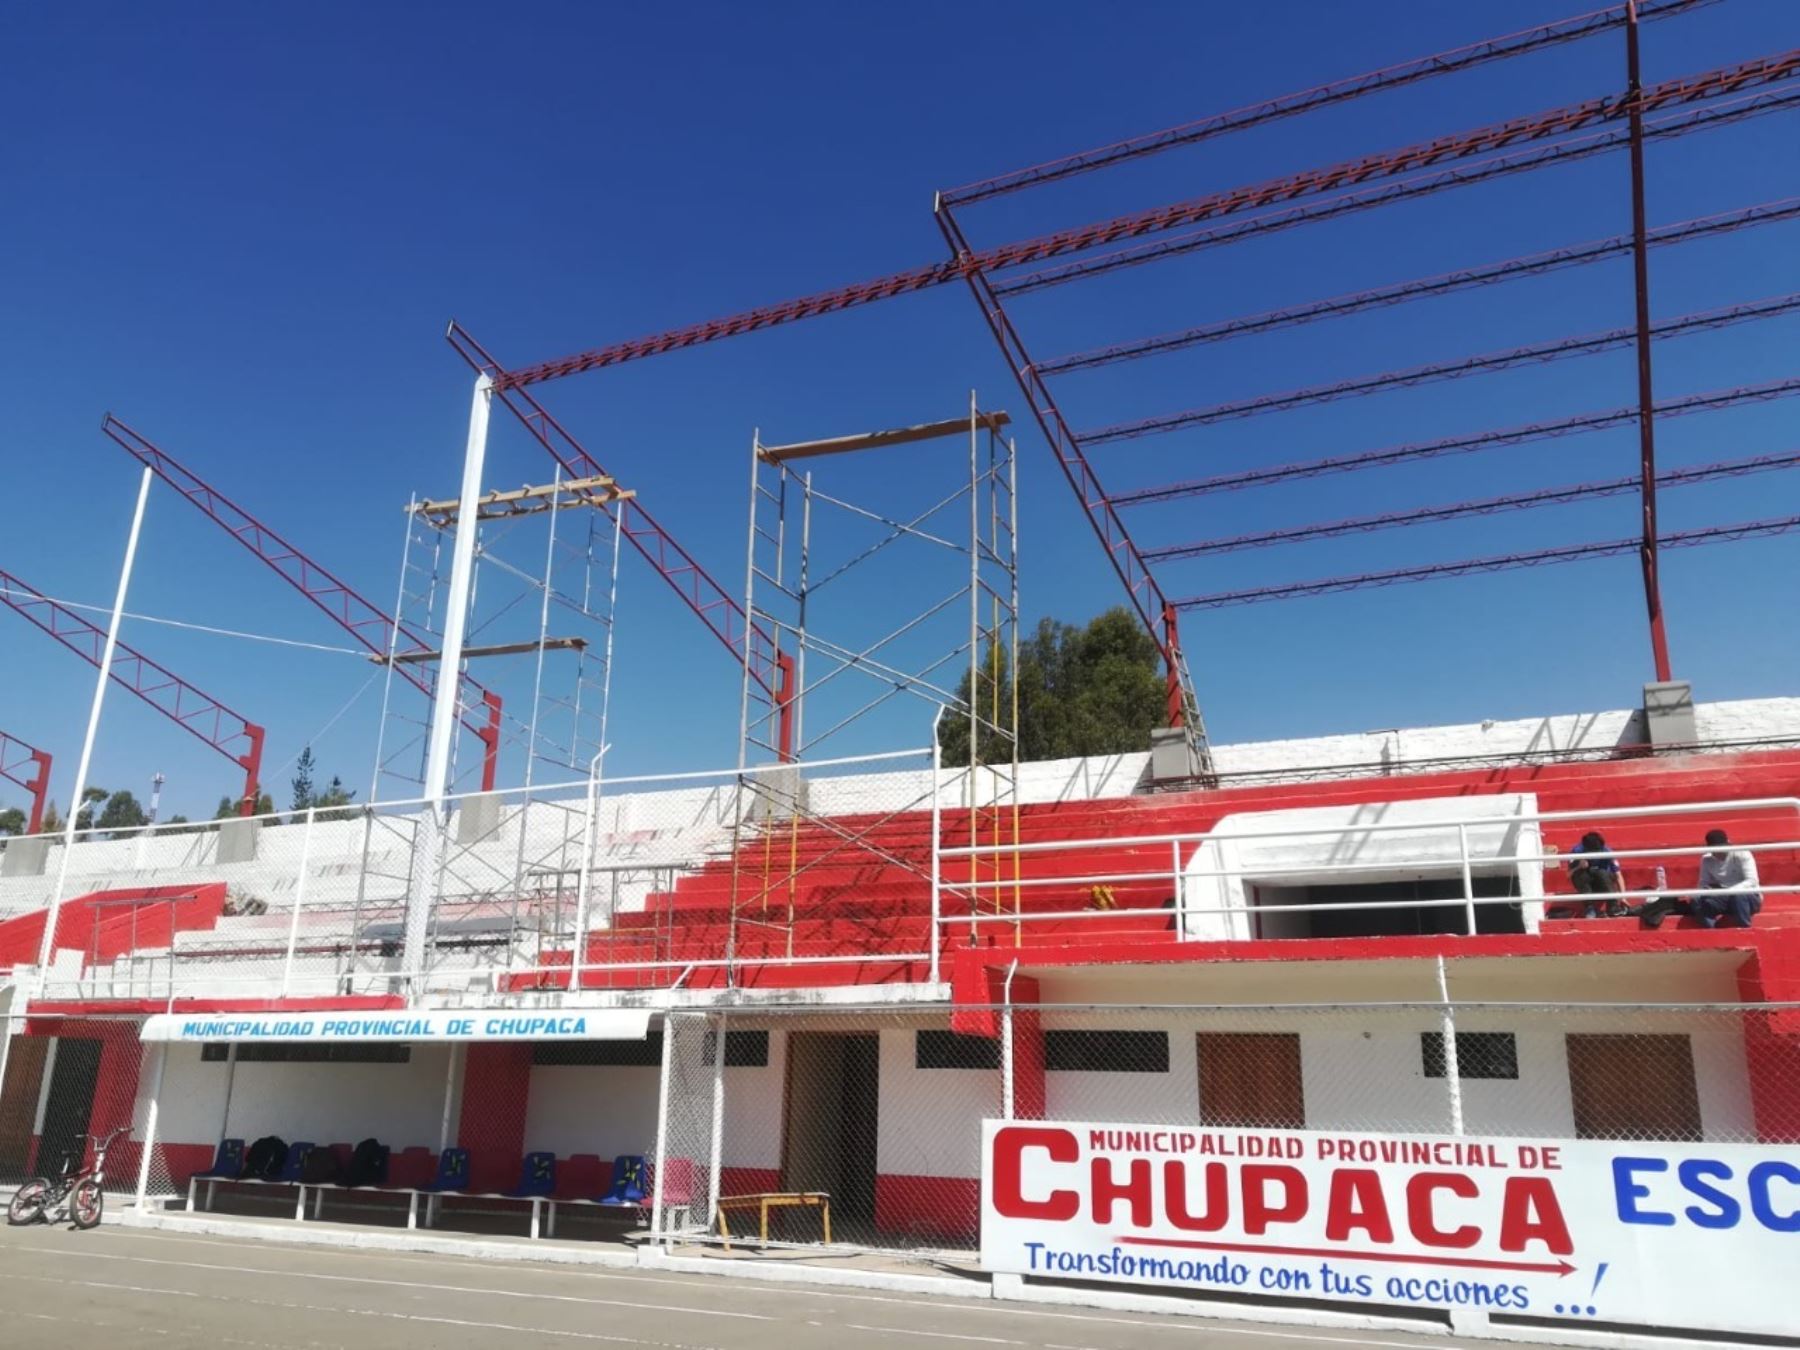 Huancayo: advierten de obras en estadio municipal de Chupaca sin contrato regular.